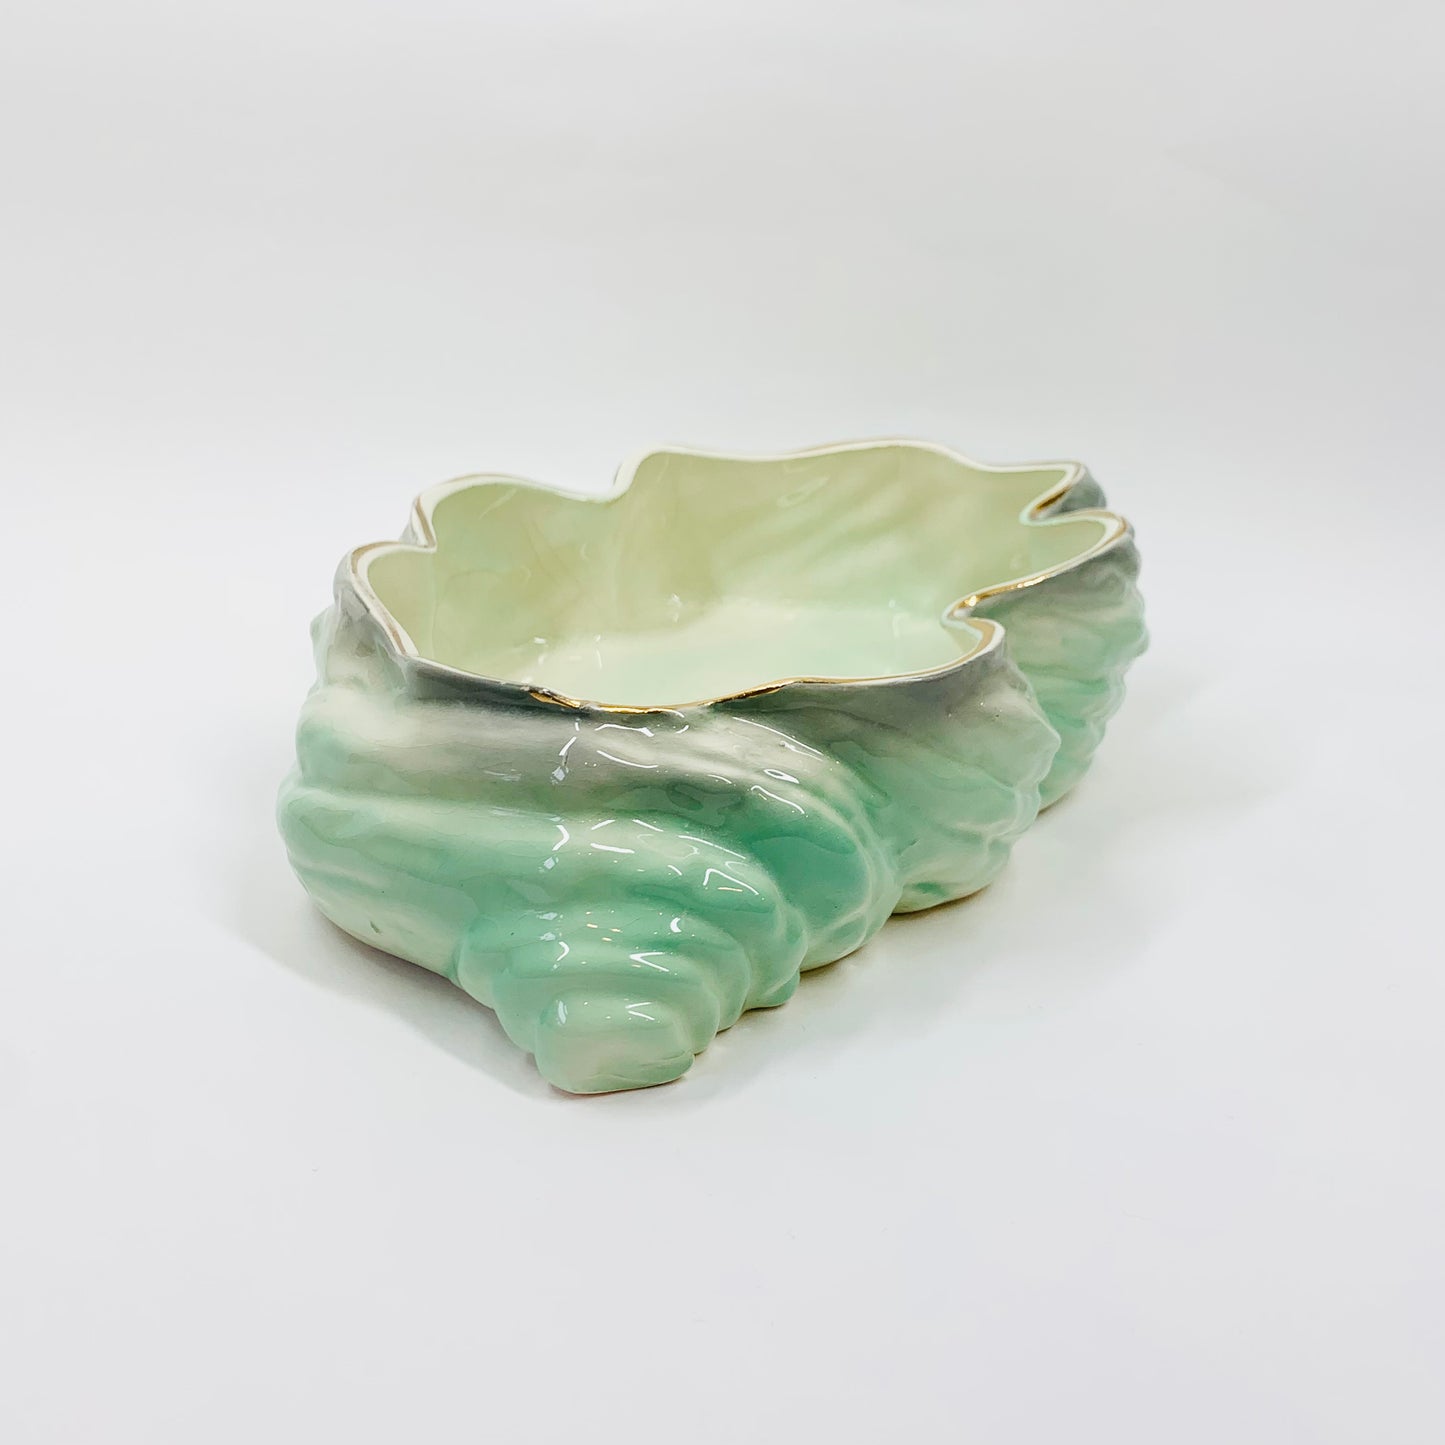 Large Art Deco Pates Australia green lustre pottery trough vase/shell bowl